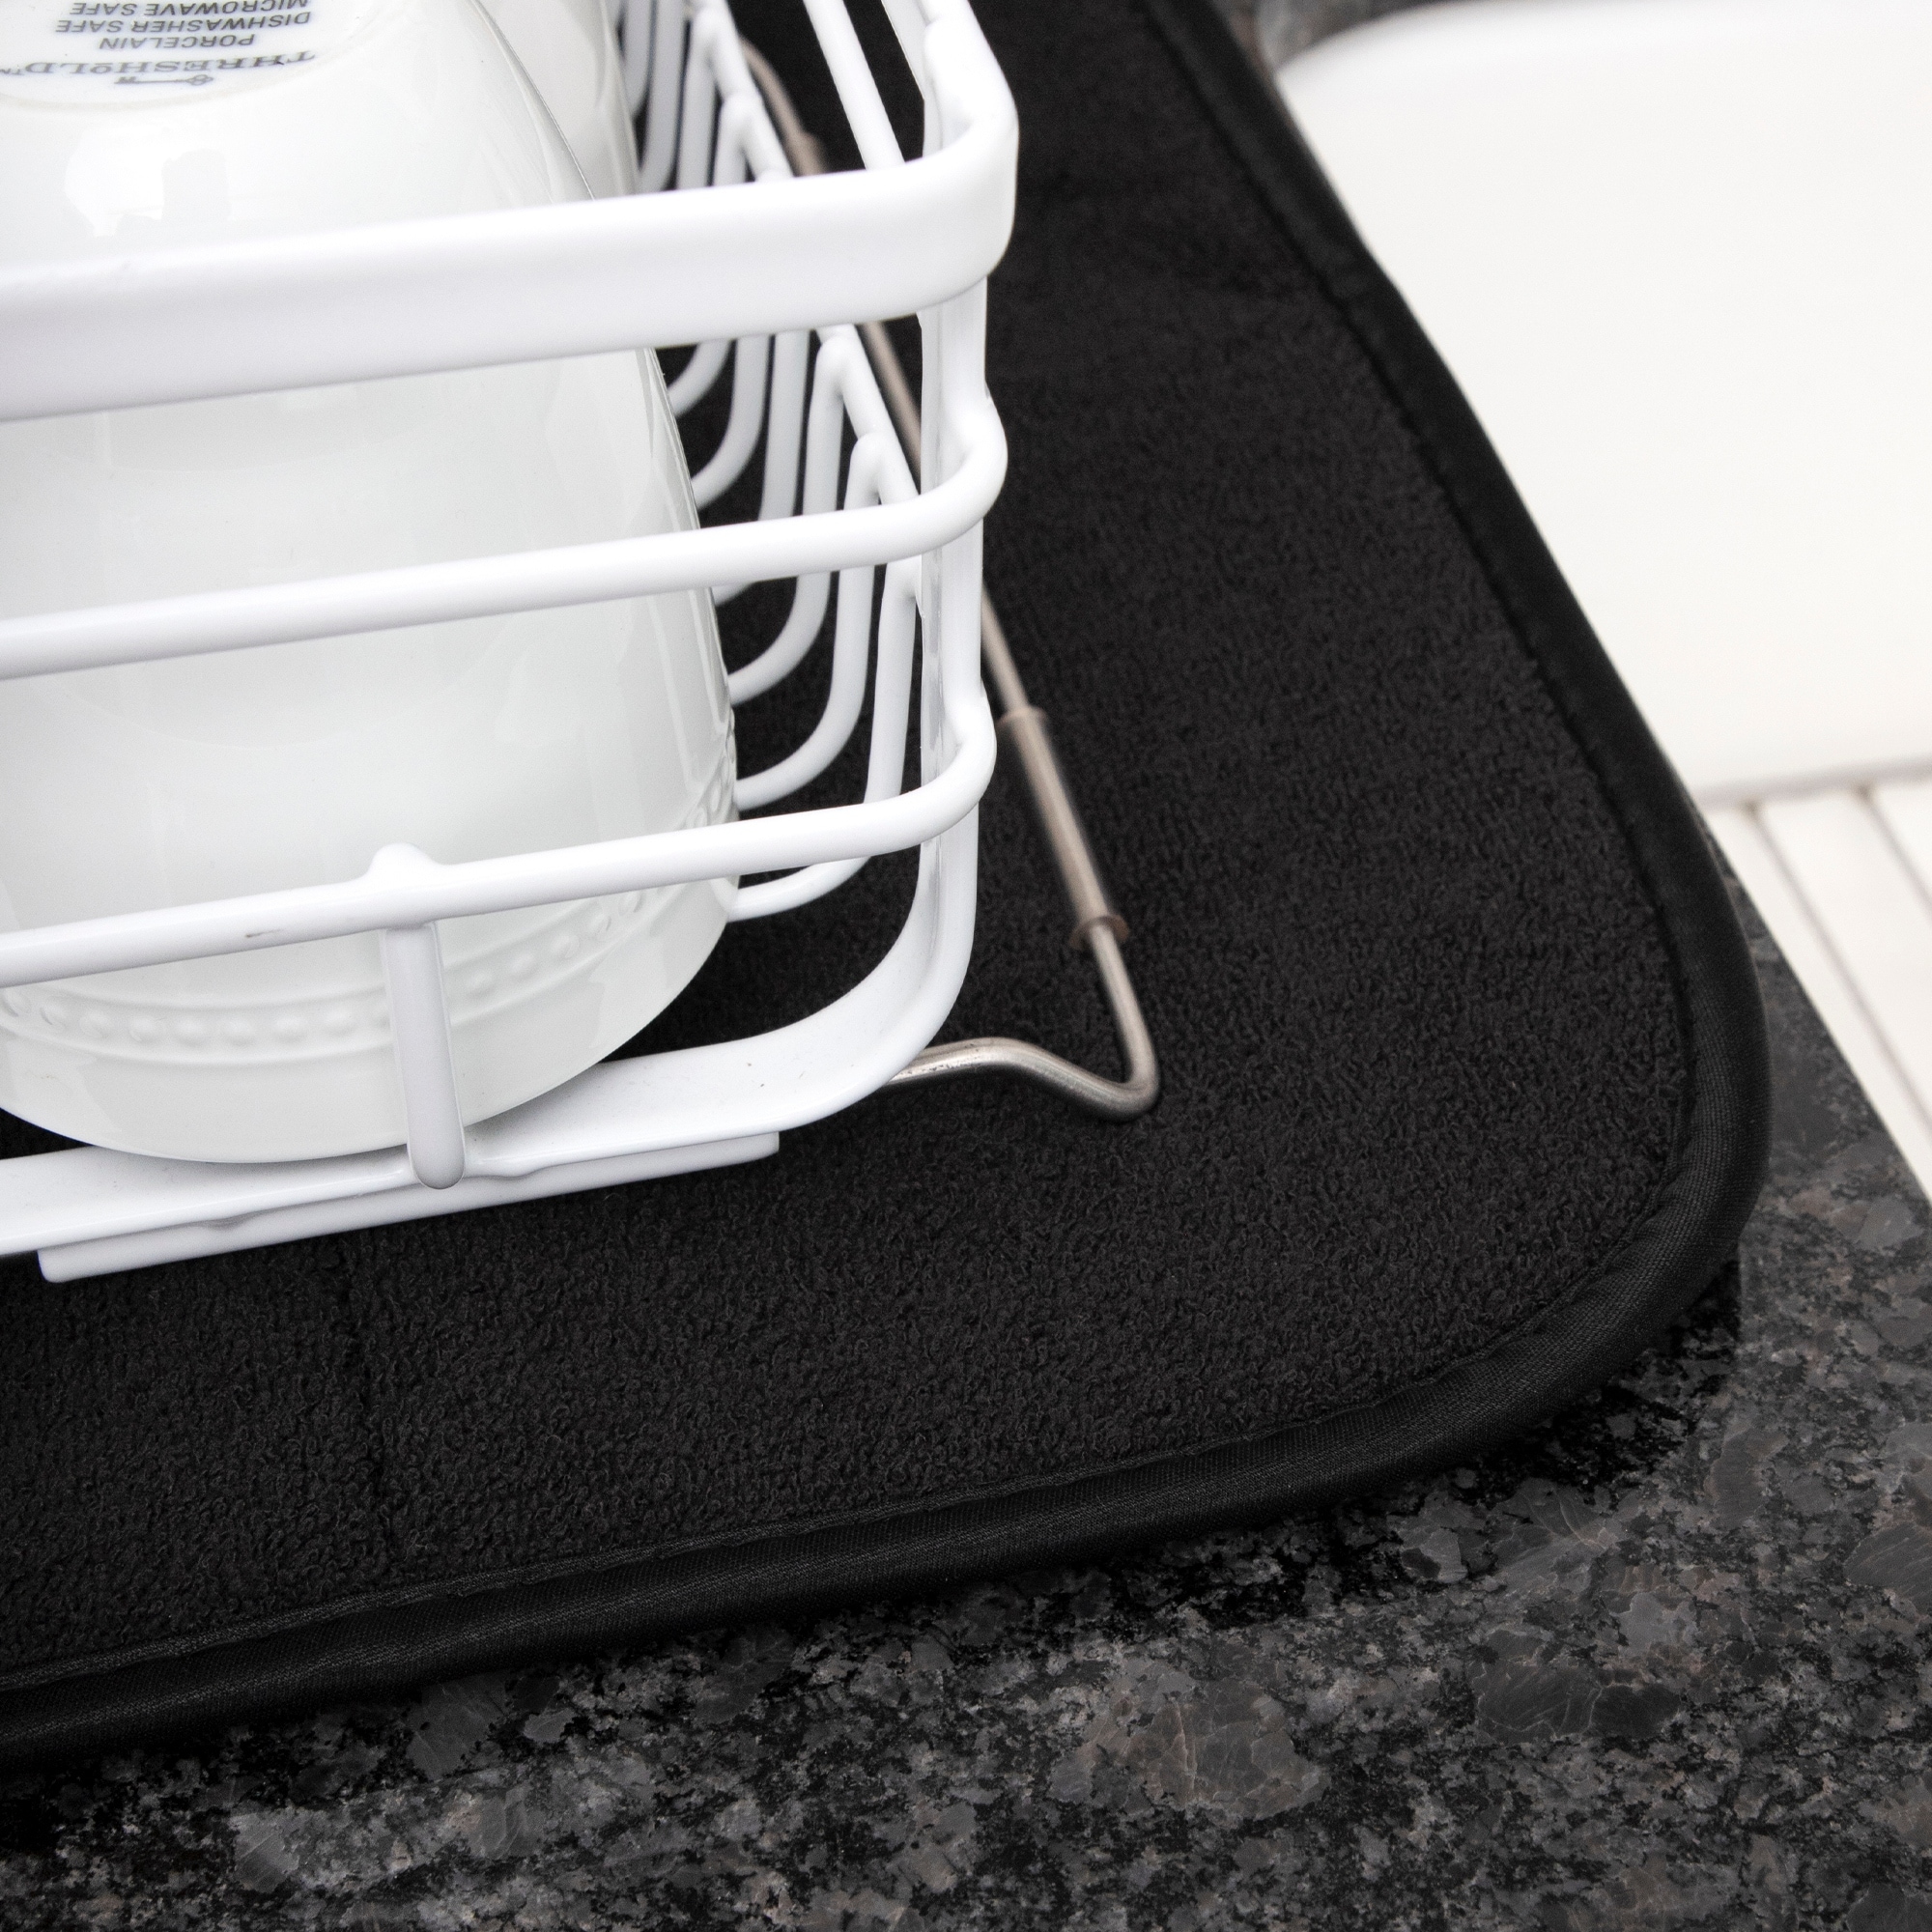 Dishwashing Tools: Microfiber Dish Drying Mat, Black, 18 x 16